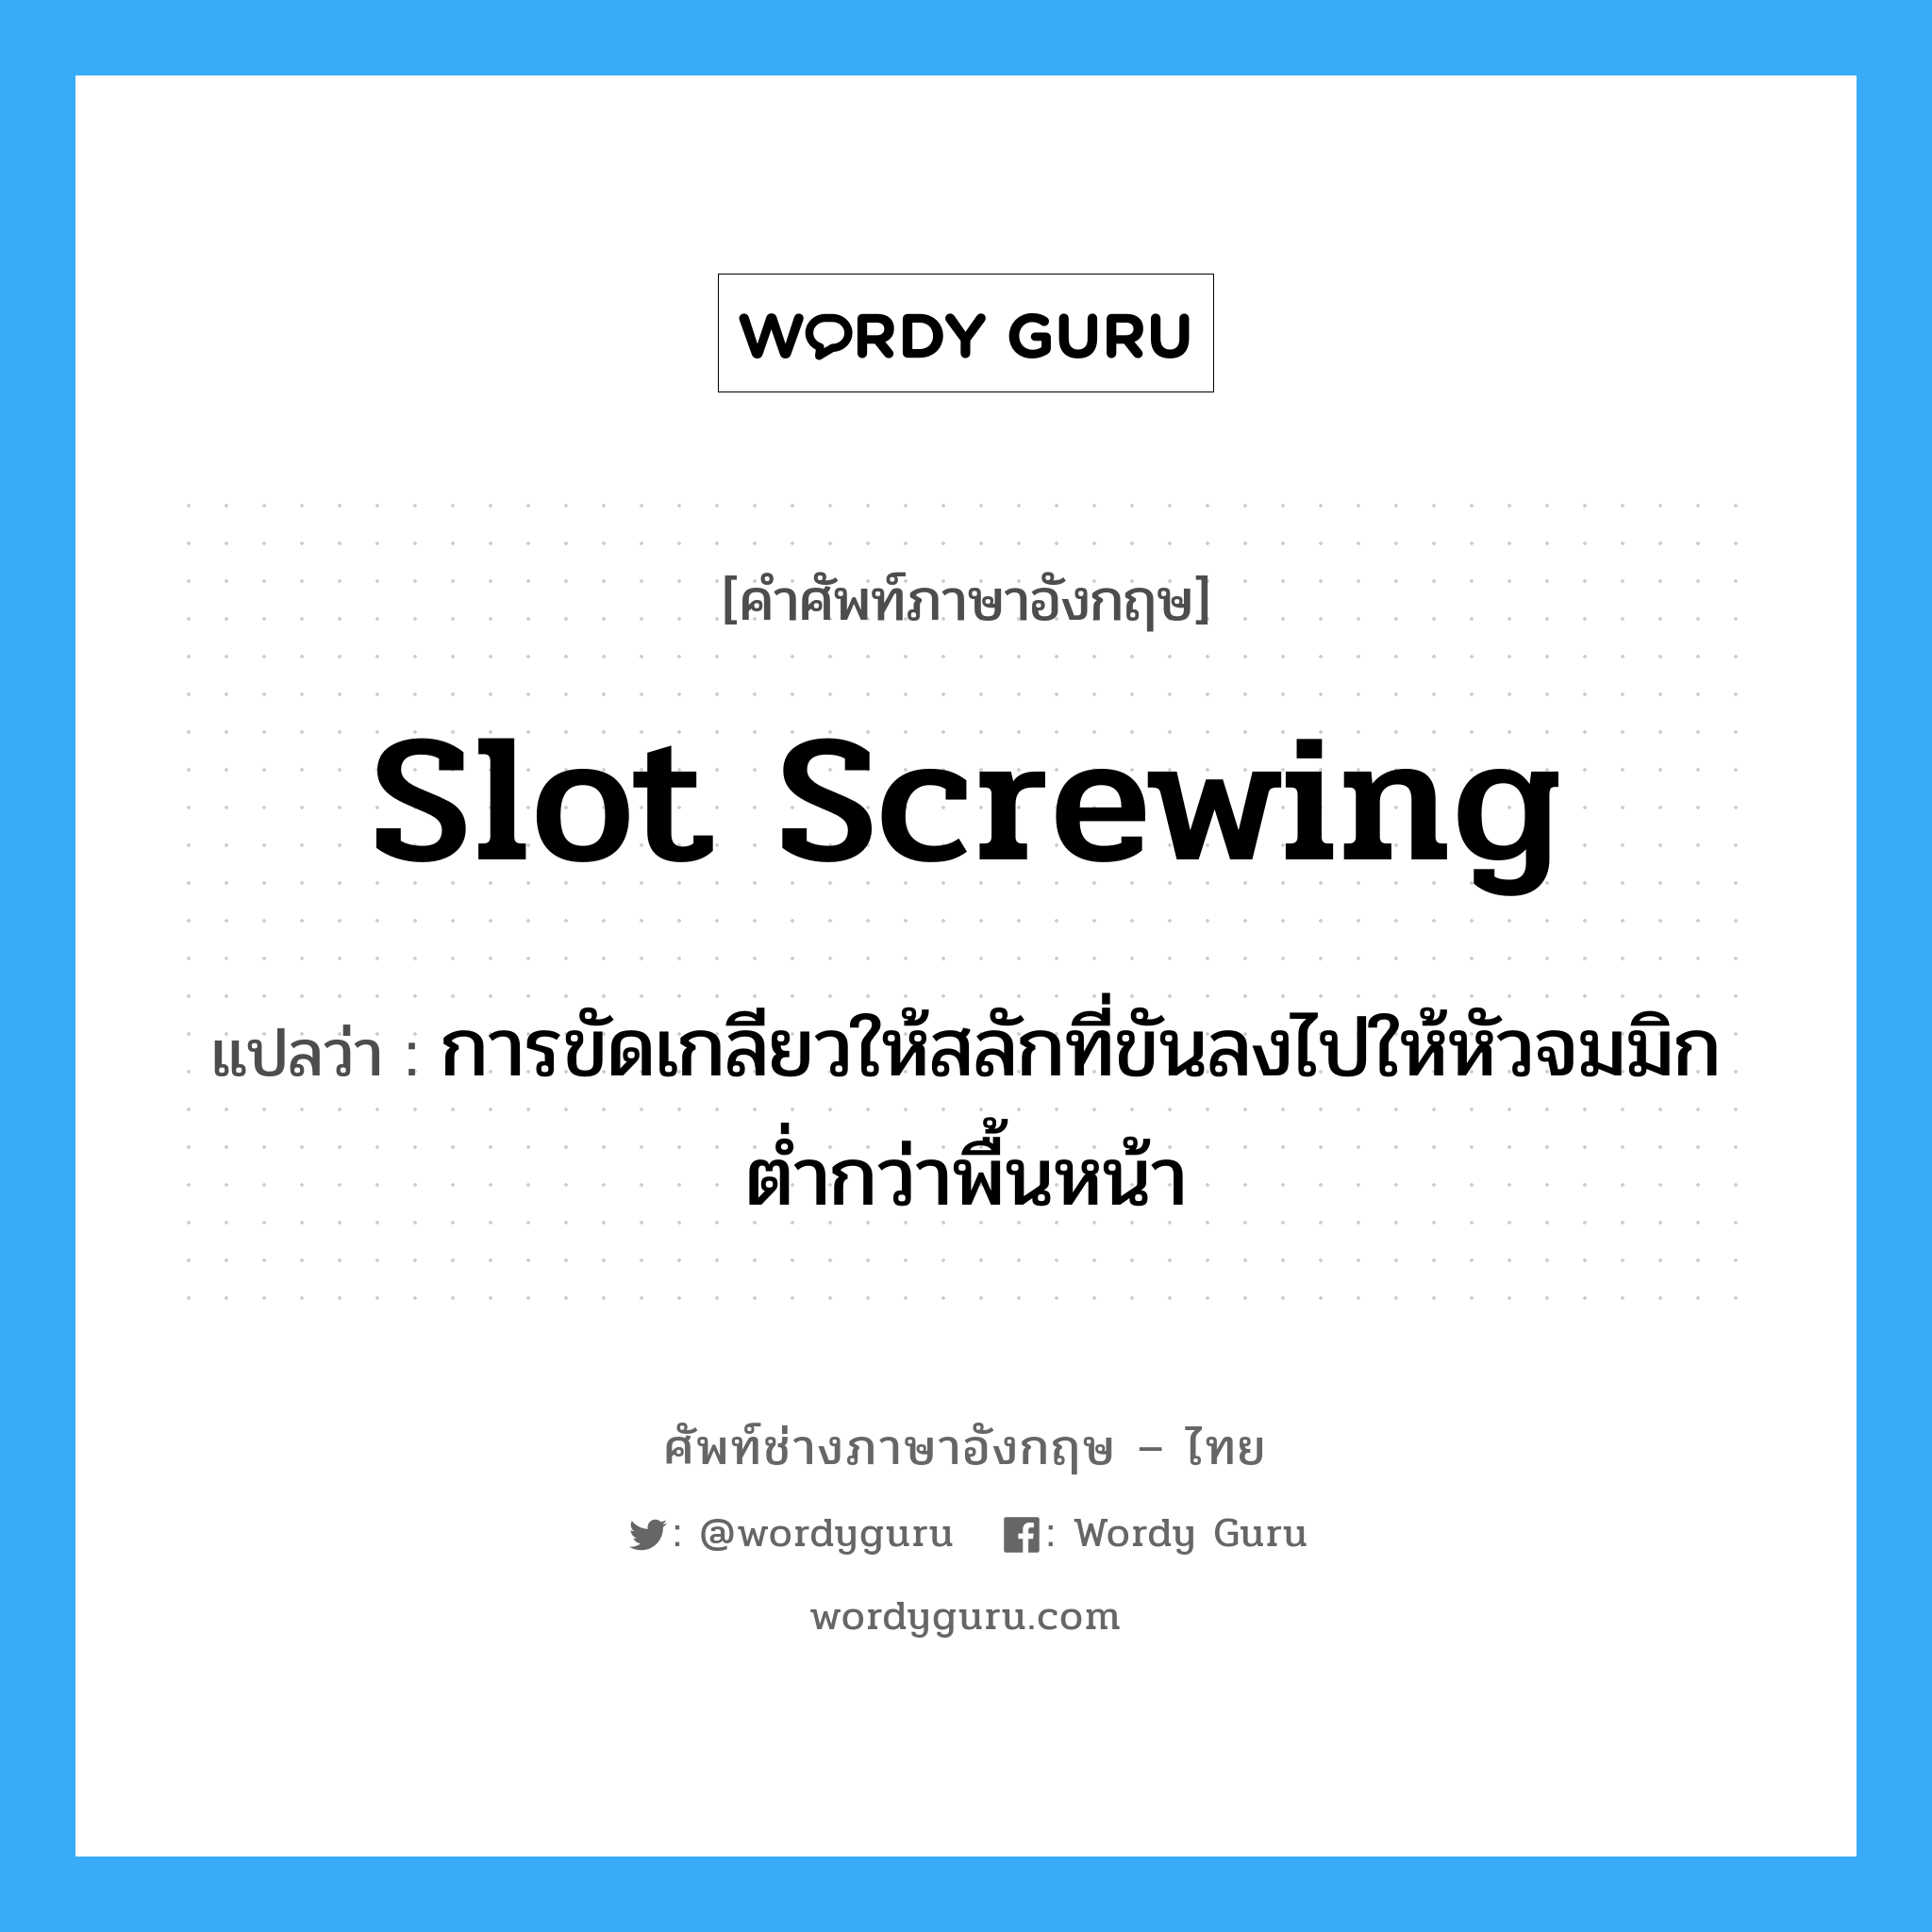 slot screwing แปลว่า?, คำศัพท์ช่างภาษาอังกฤษ - ไทย slot screwing คำศัพท์ภาษาอังกฤษ slot screwing แปลว่า การขัดเกลียวให้สลักที่ขันลงไปให้หัวจมมิกต่ำกว่าพื้นหน้า